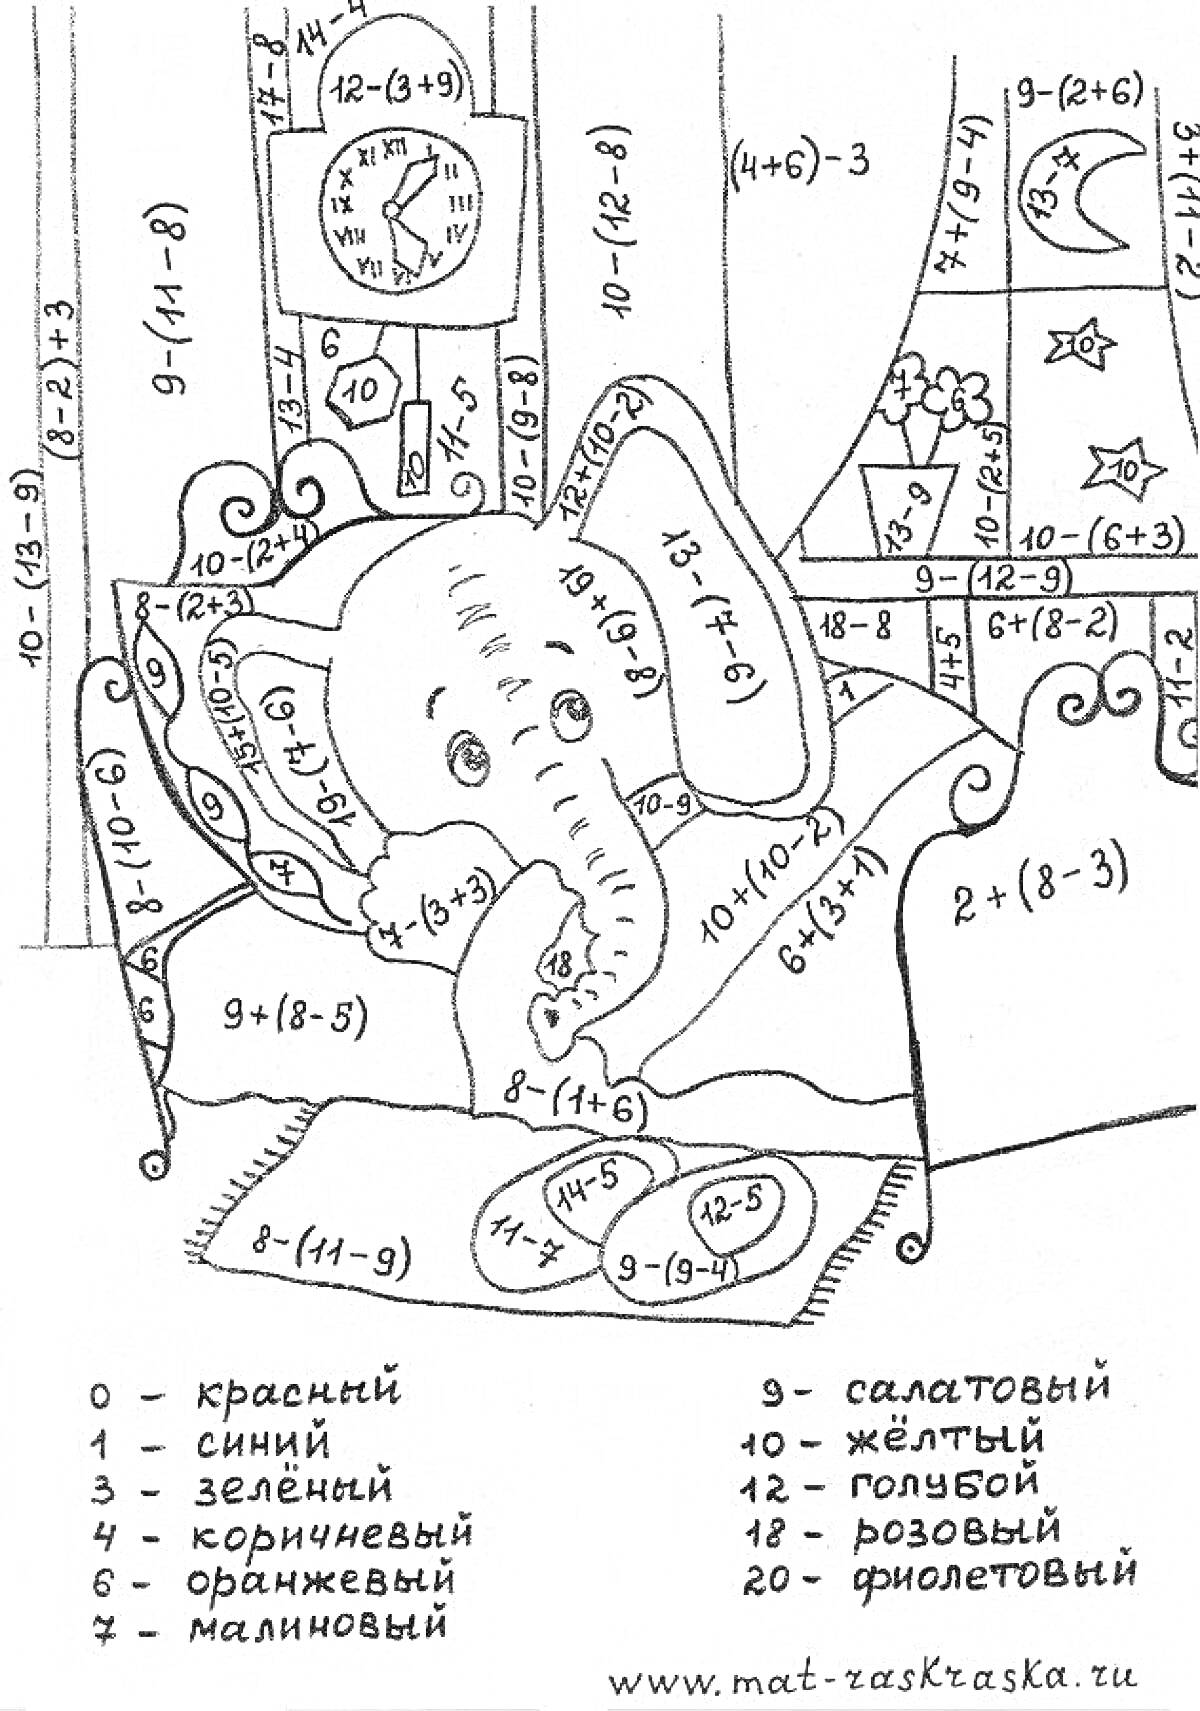 Раскраска Слоненок на кровати с математическими заданиями и украшениями вокруг (будильник, домики, луна и звезды).